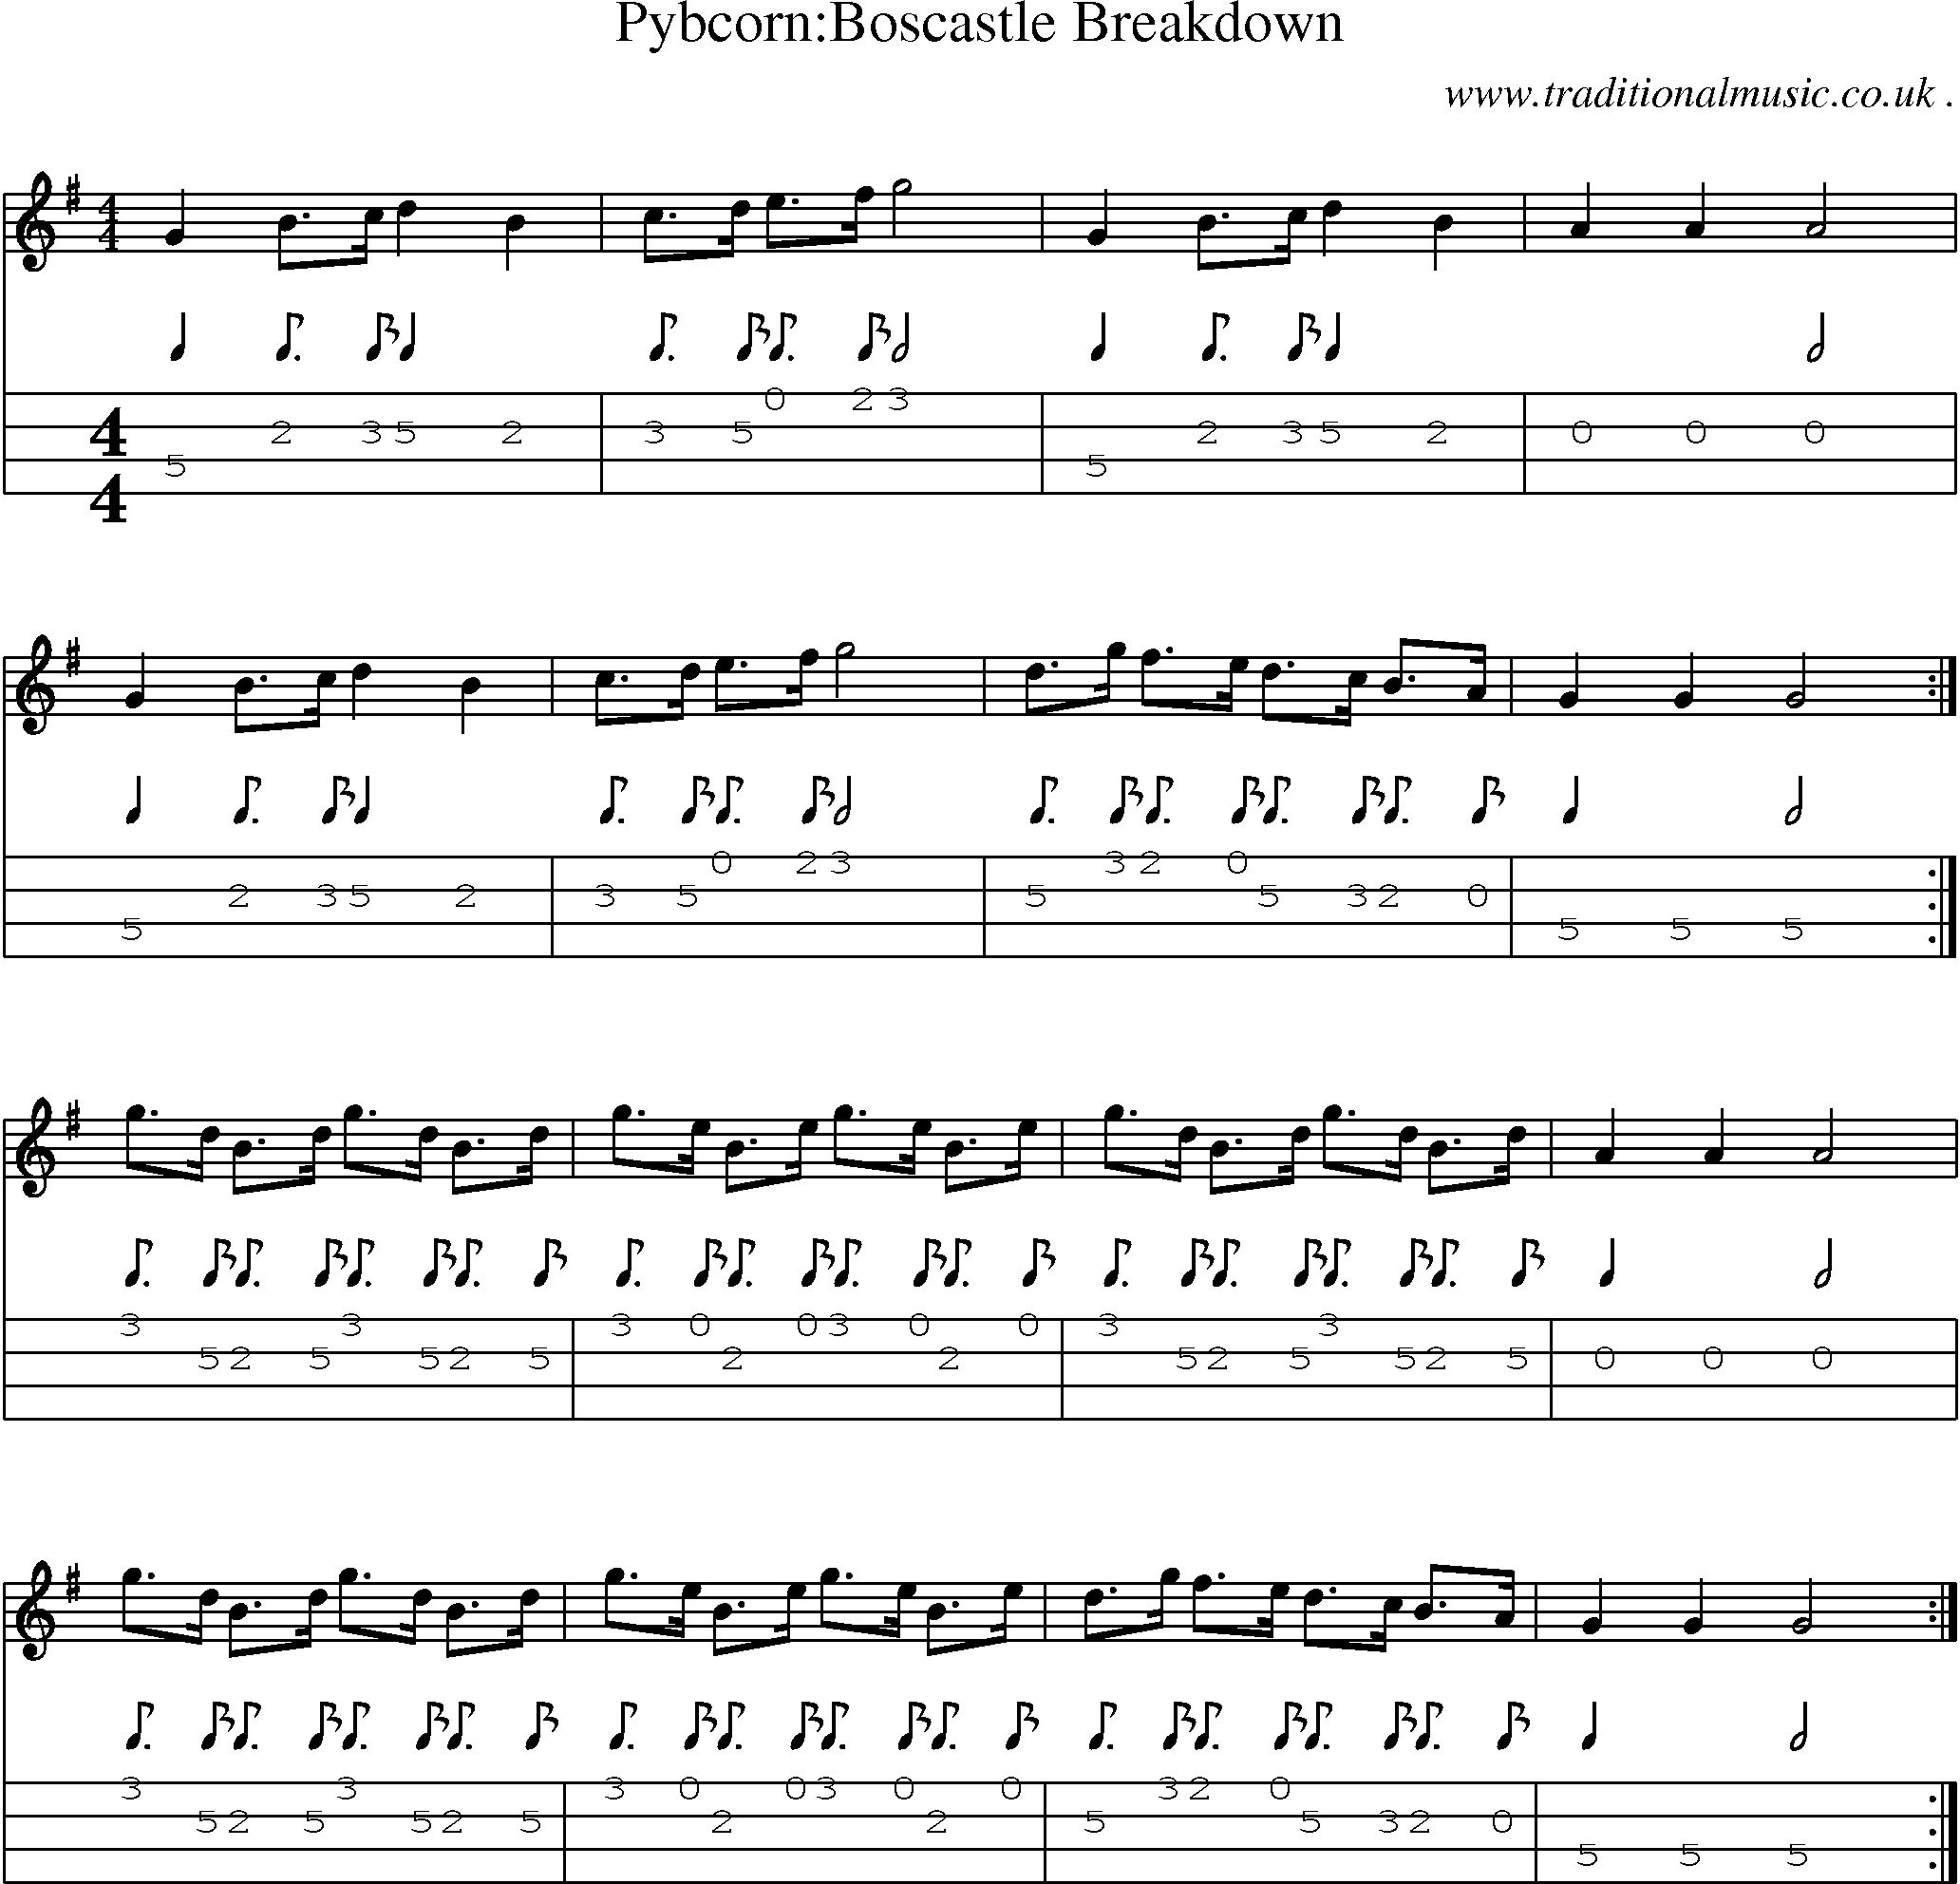 Sheet-Music and Mandolin Tabs for Pybcornboscastle Breakdown